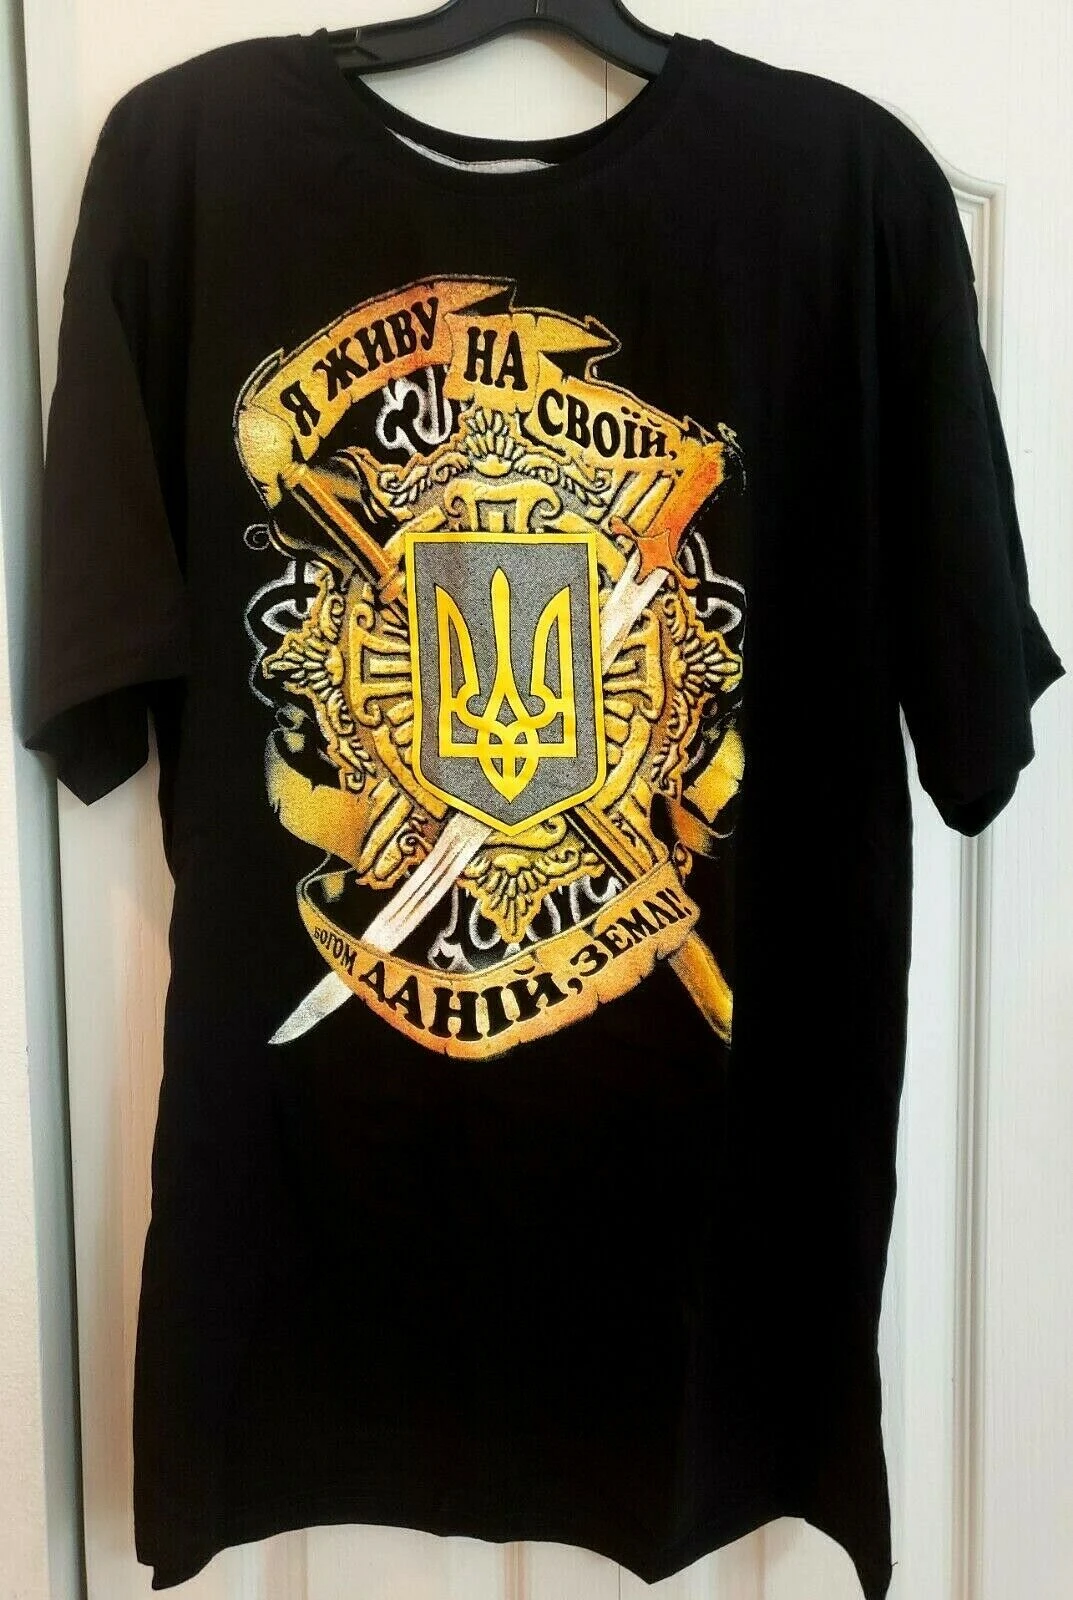 

Unique Cool Design 2 Sides Ukraine "God-Given Land" My land Shirt Men's 100% Cotton Casual T-shirts Loose Top S-3XL